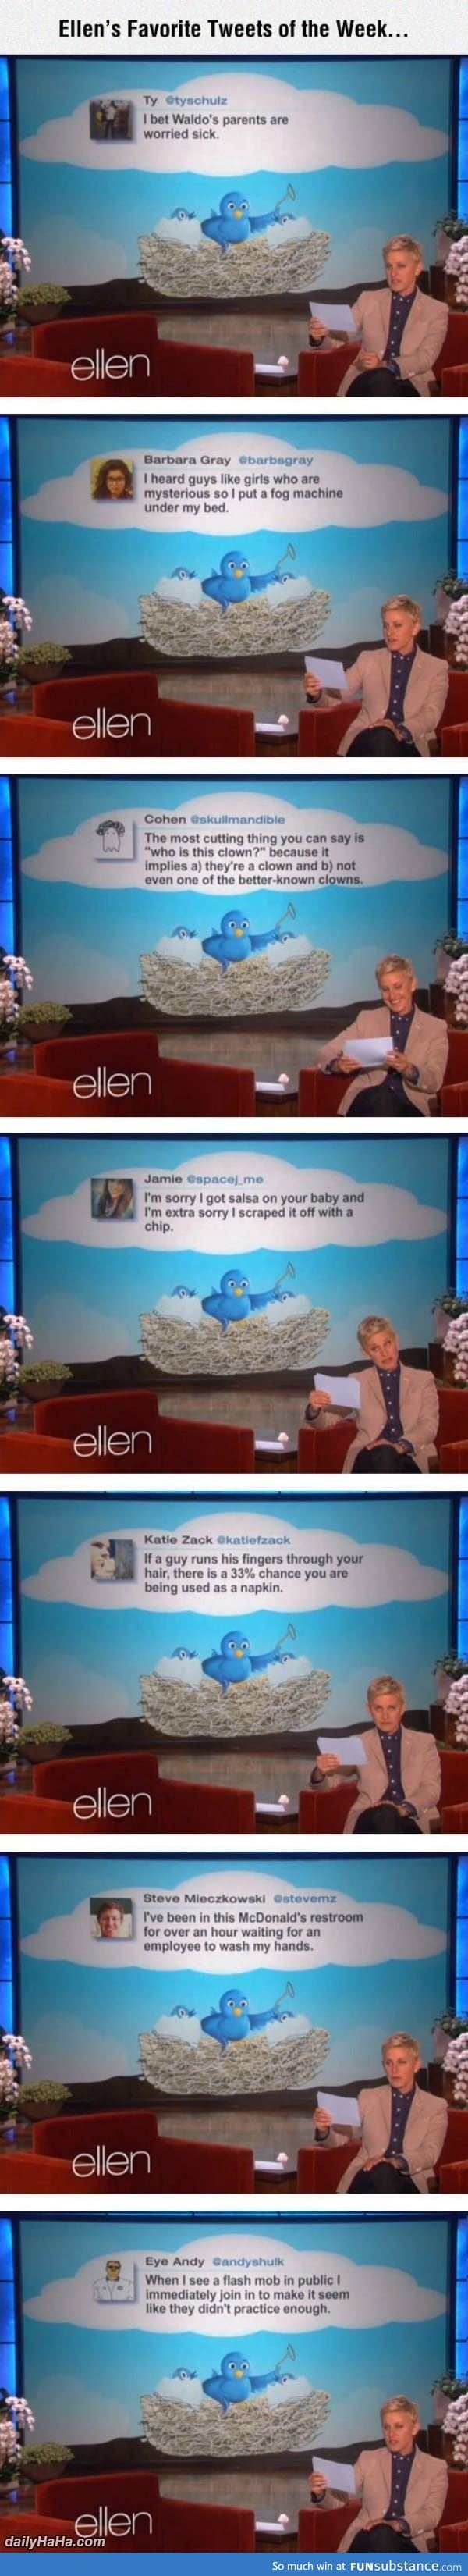 Ellen's favorite tweets